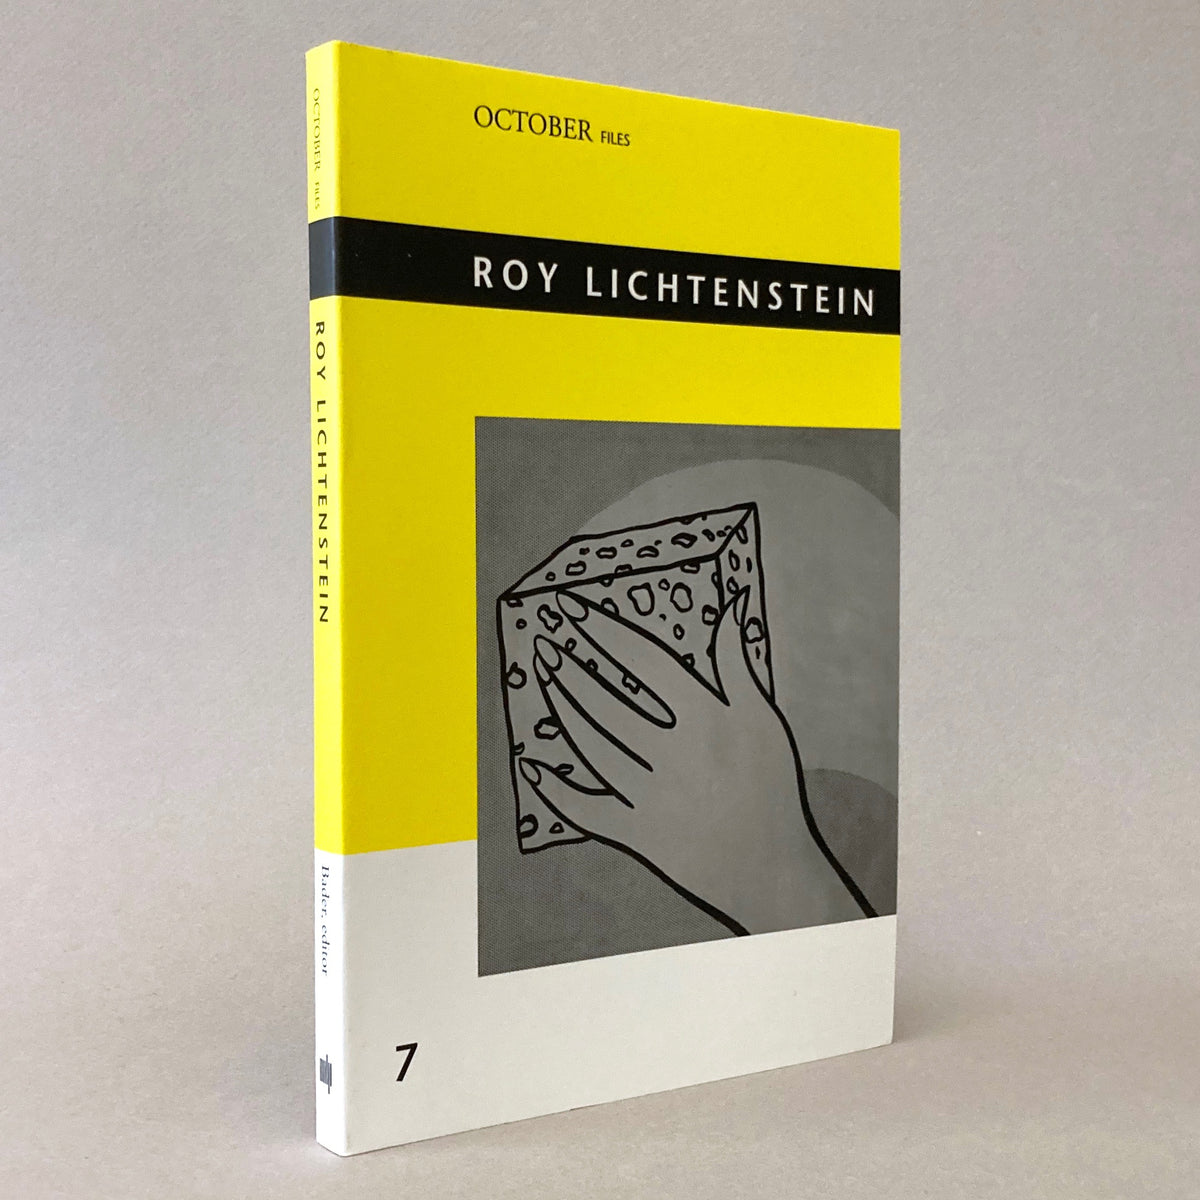 Roy Lichtenstein (October Files #7)